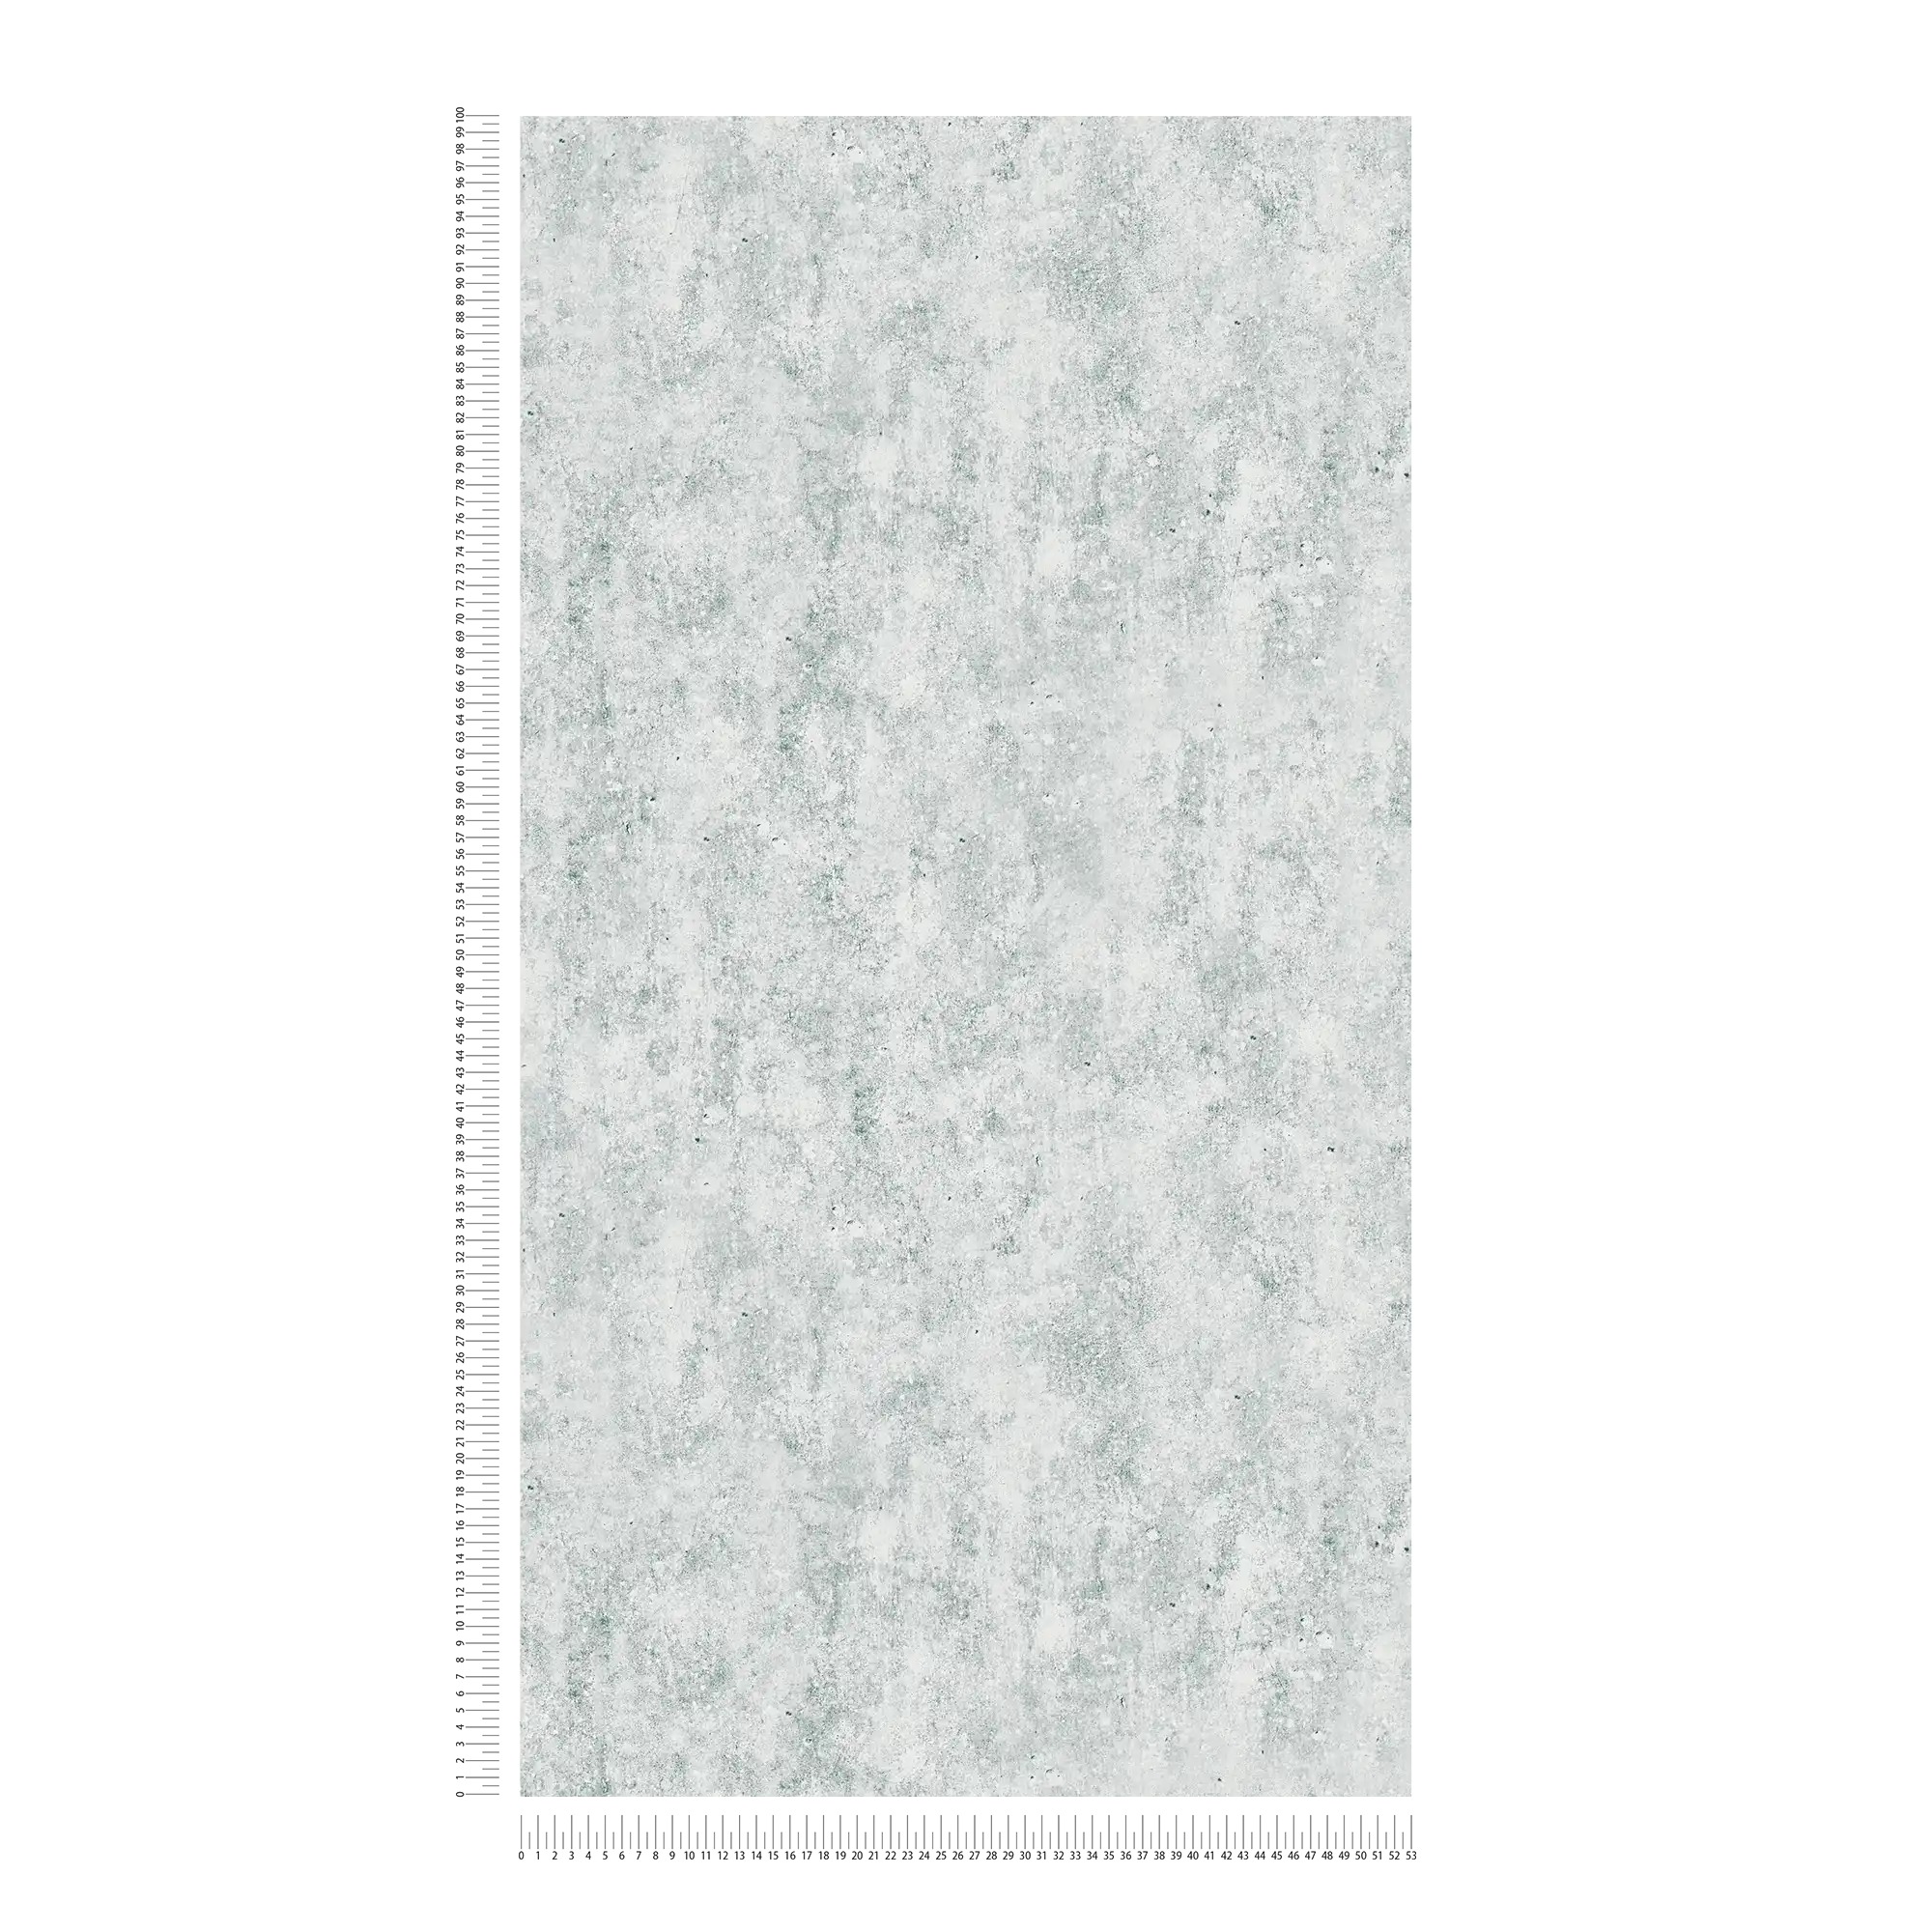             Licht betonbehang met ruw oppervlak - grijs
        